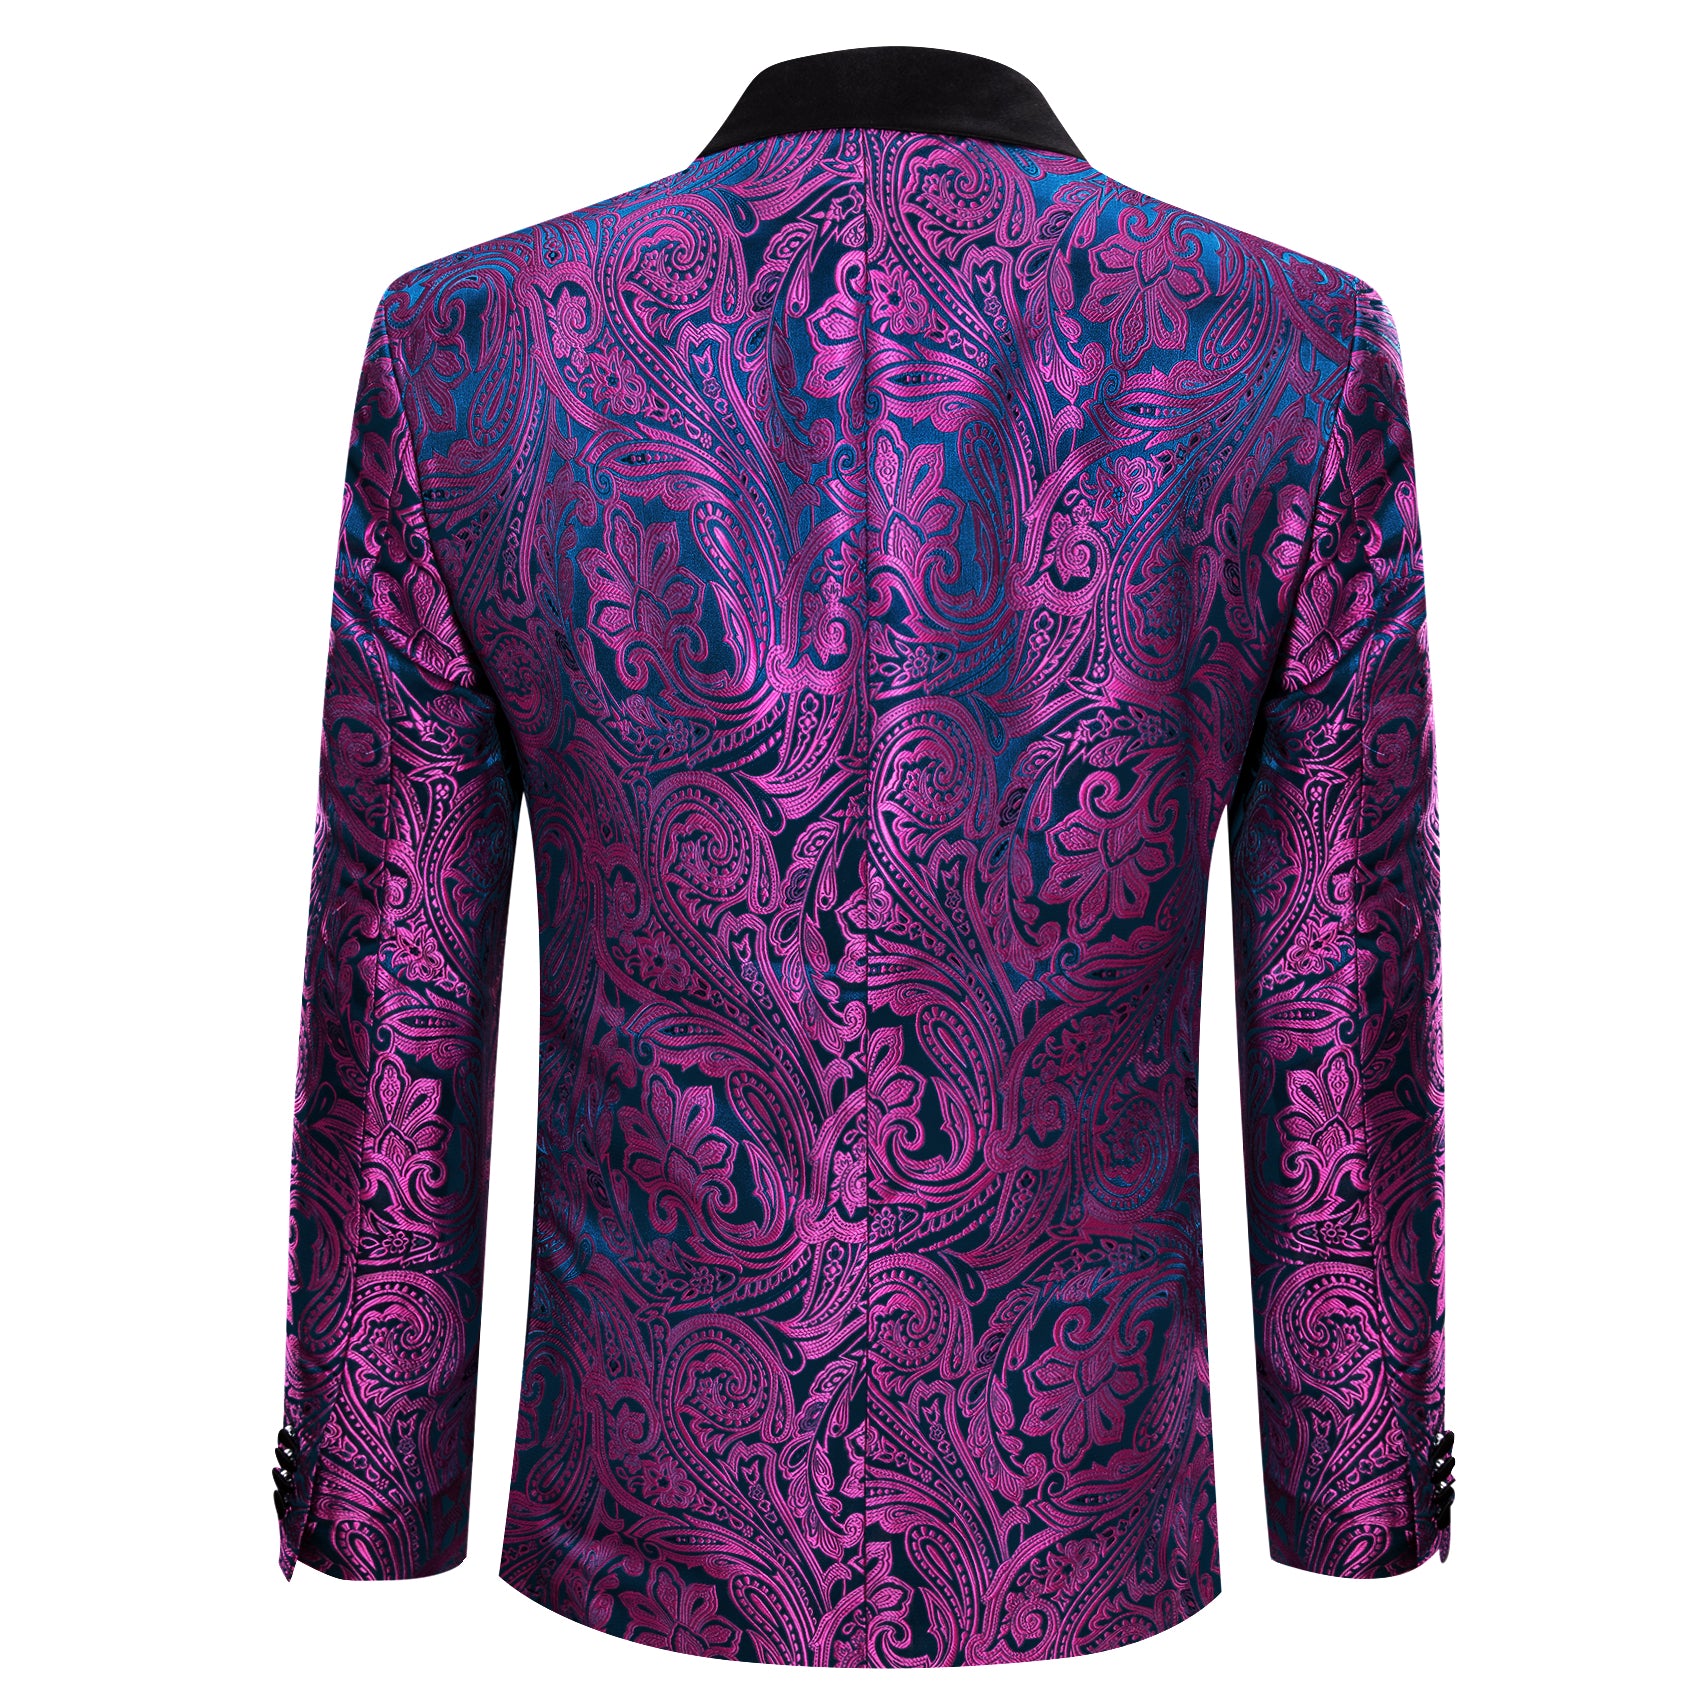 Barry.wang Notched Collar Suit Men's Purple Jacquard Floral Suit Jacket